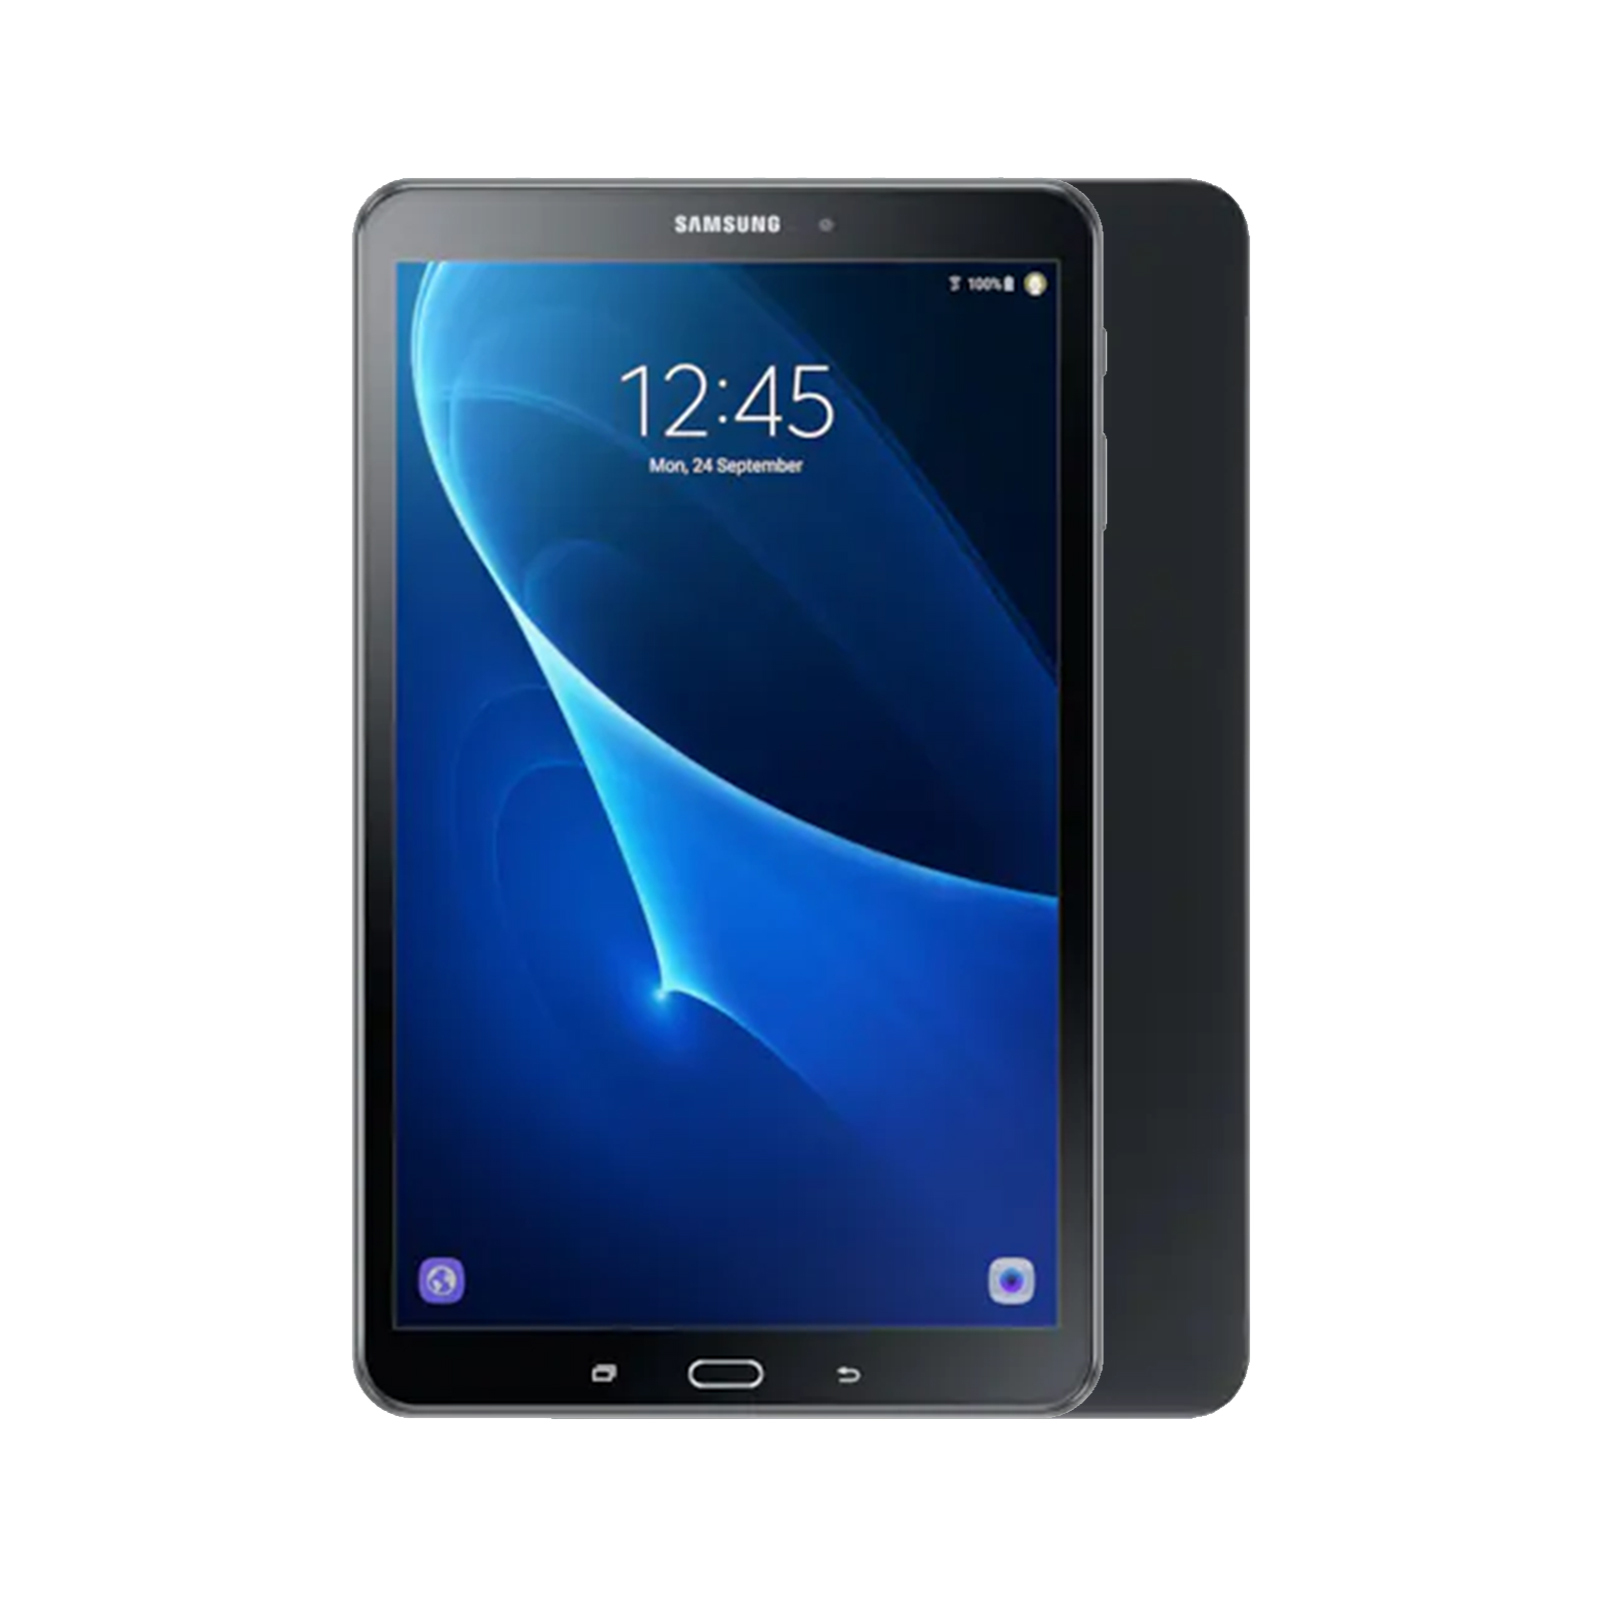 Samsung Galaxy Tab A 10.1 (2019) [WiFi] [32GB] [Black] [As New]